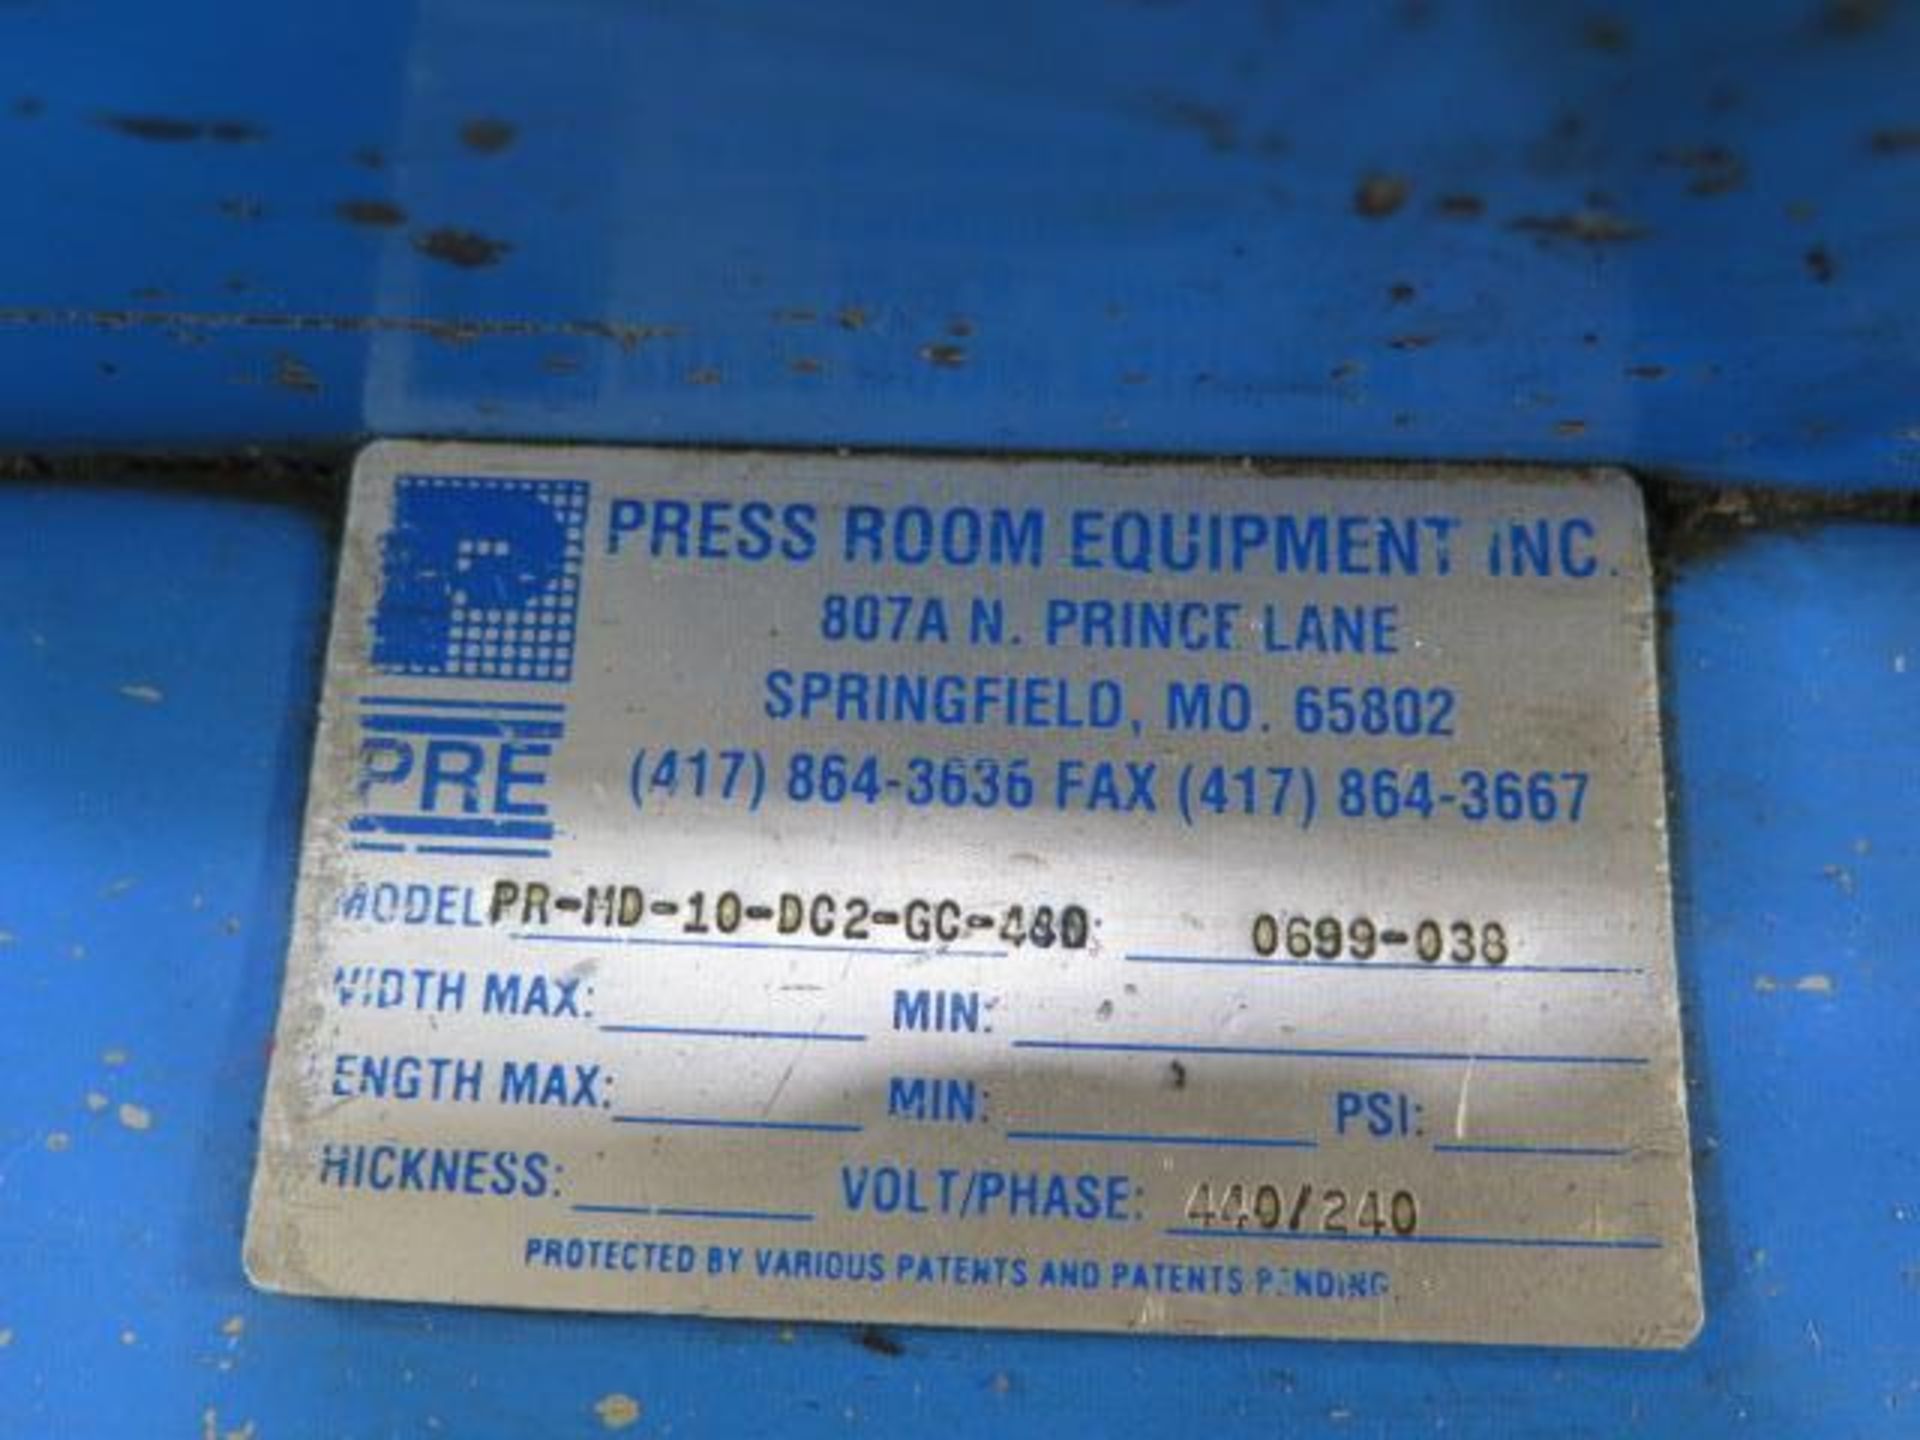 Press Room Equipment PR-HD-10-DG2-GC-480 10” Straightener/Feeder s/n0699-038 w/ Un-Coiler,SOLD AS IS - Image 11 of 11